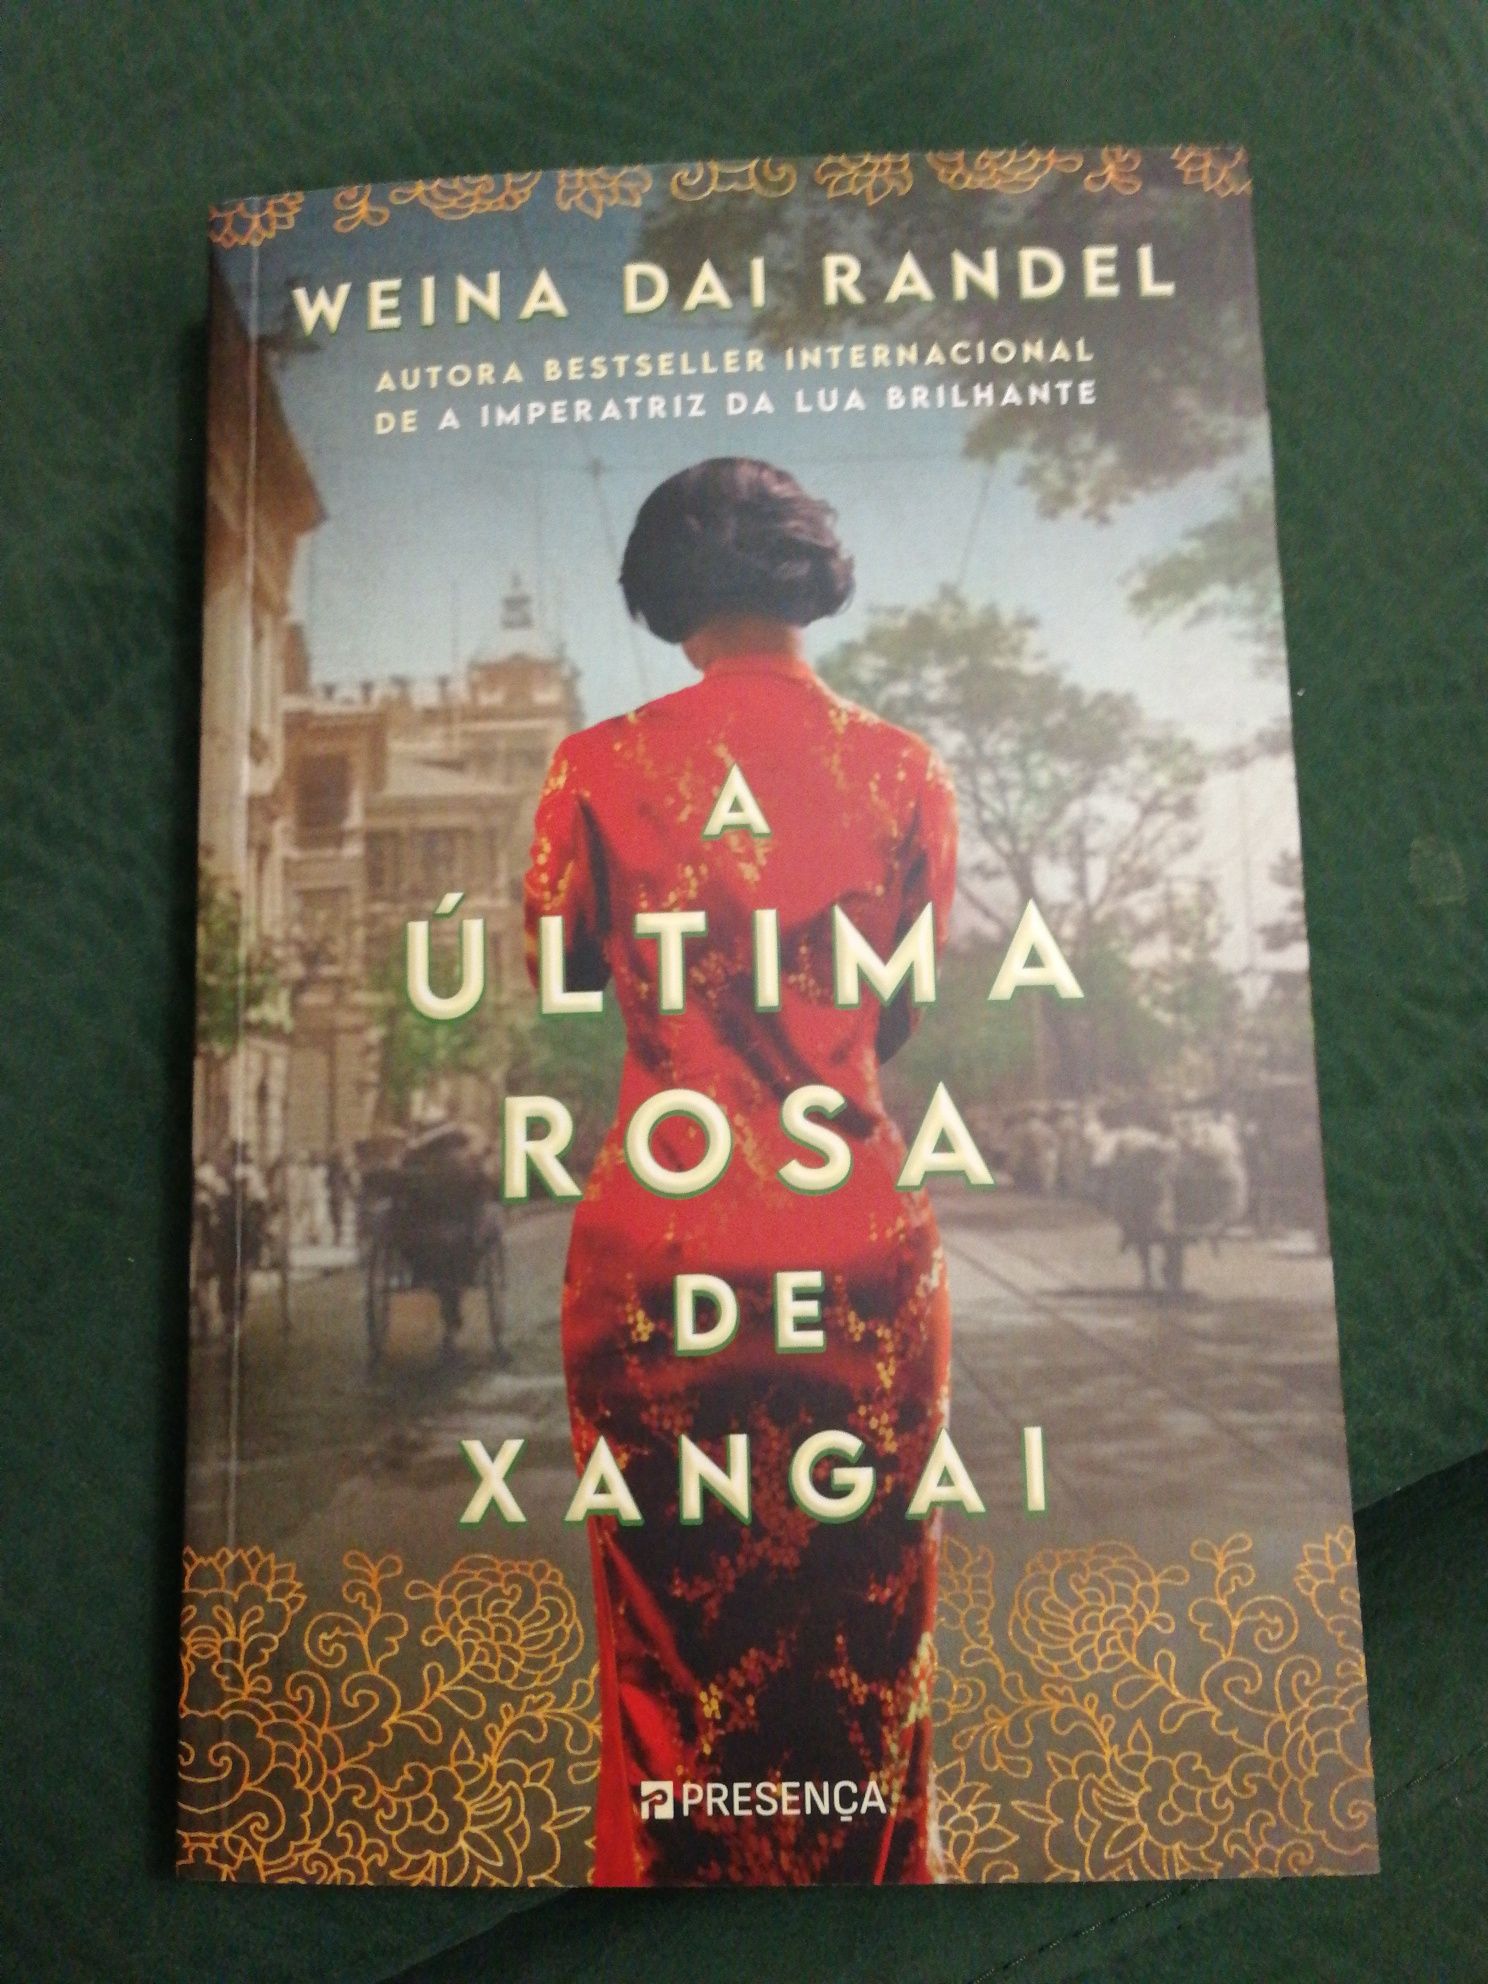 Livro "A Última Rosa de Xangai" de Weina dai Randel